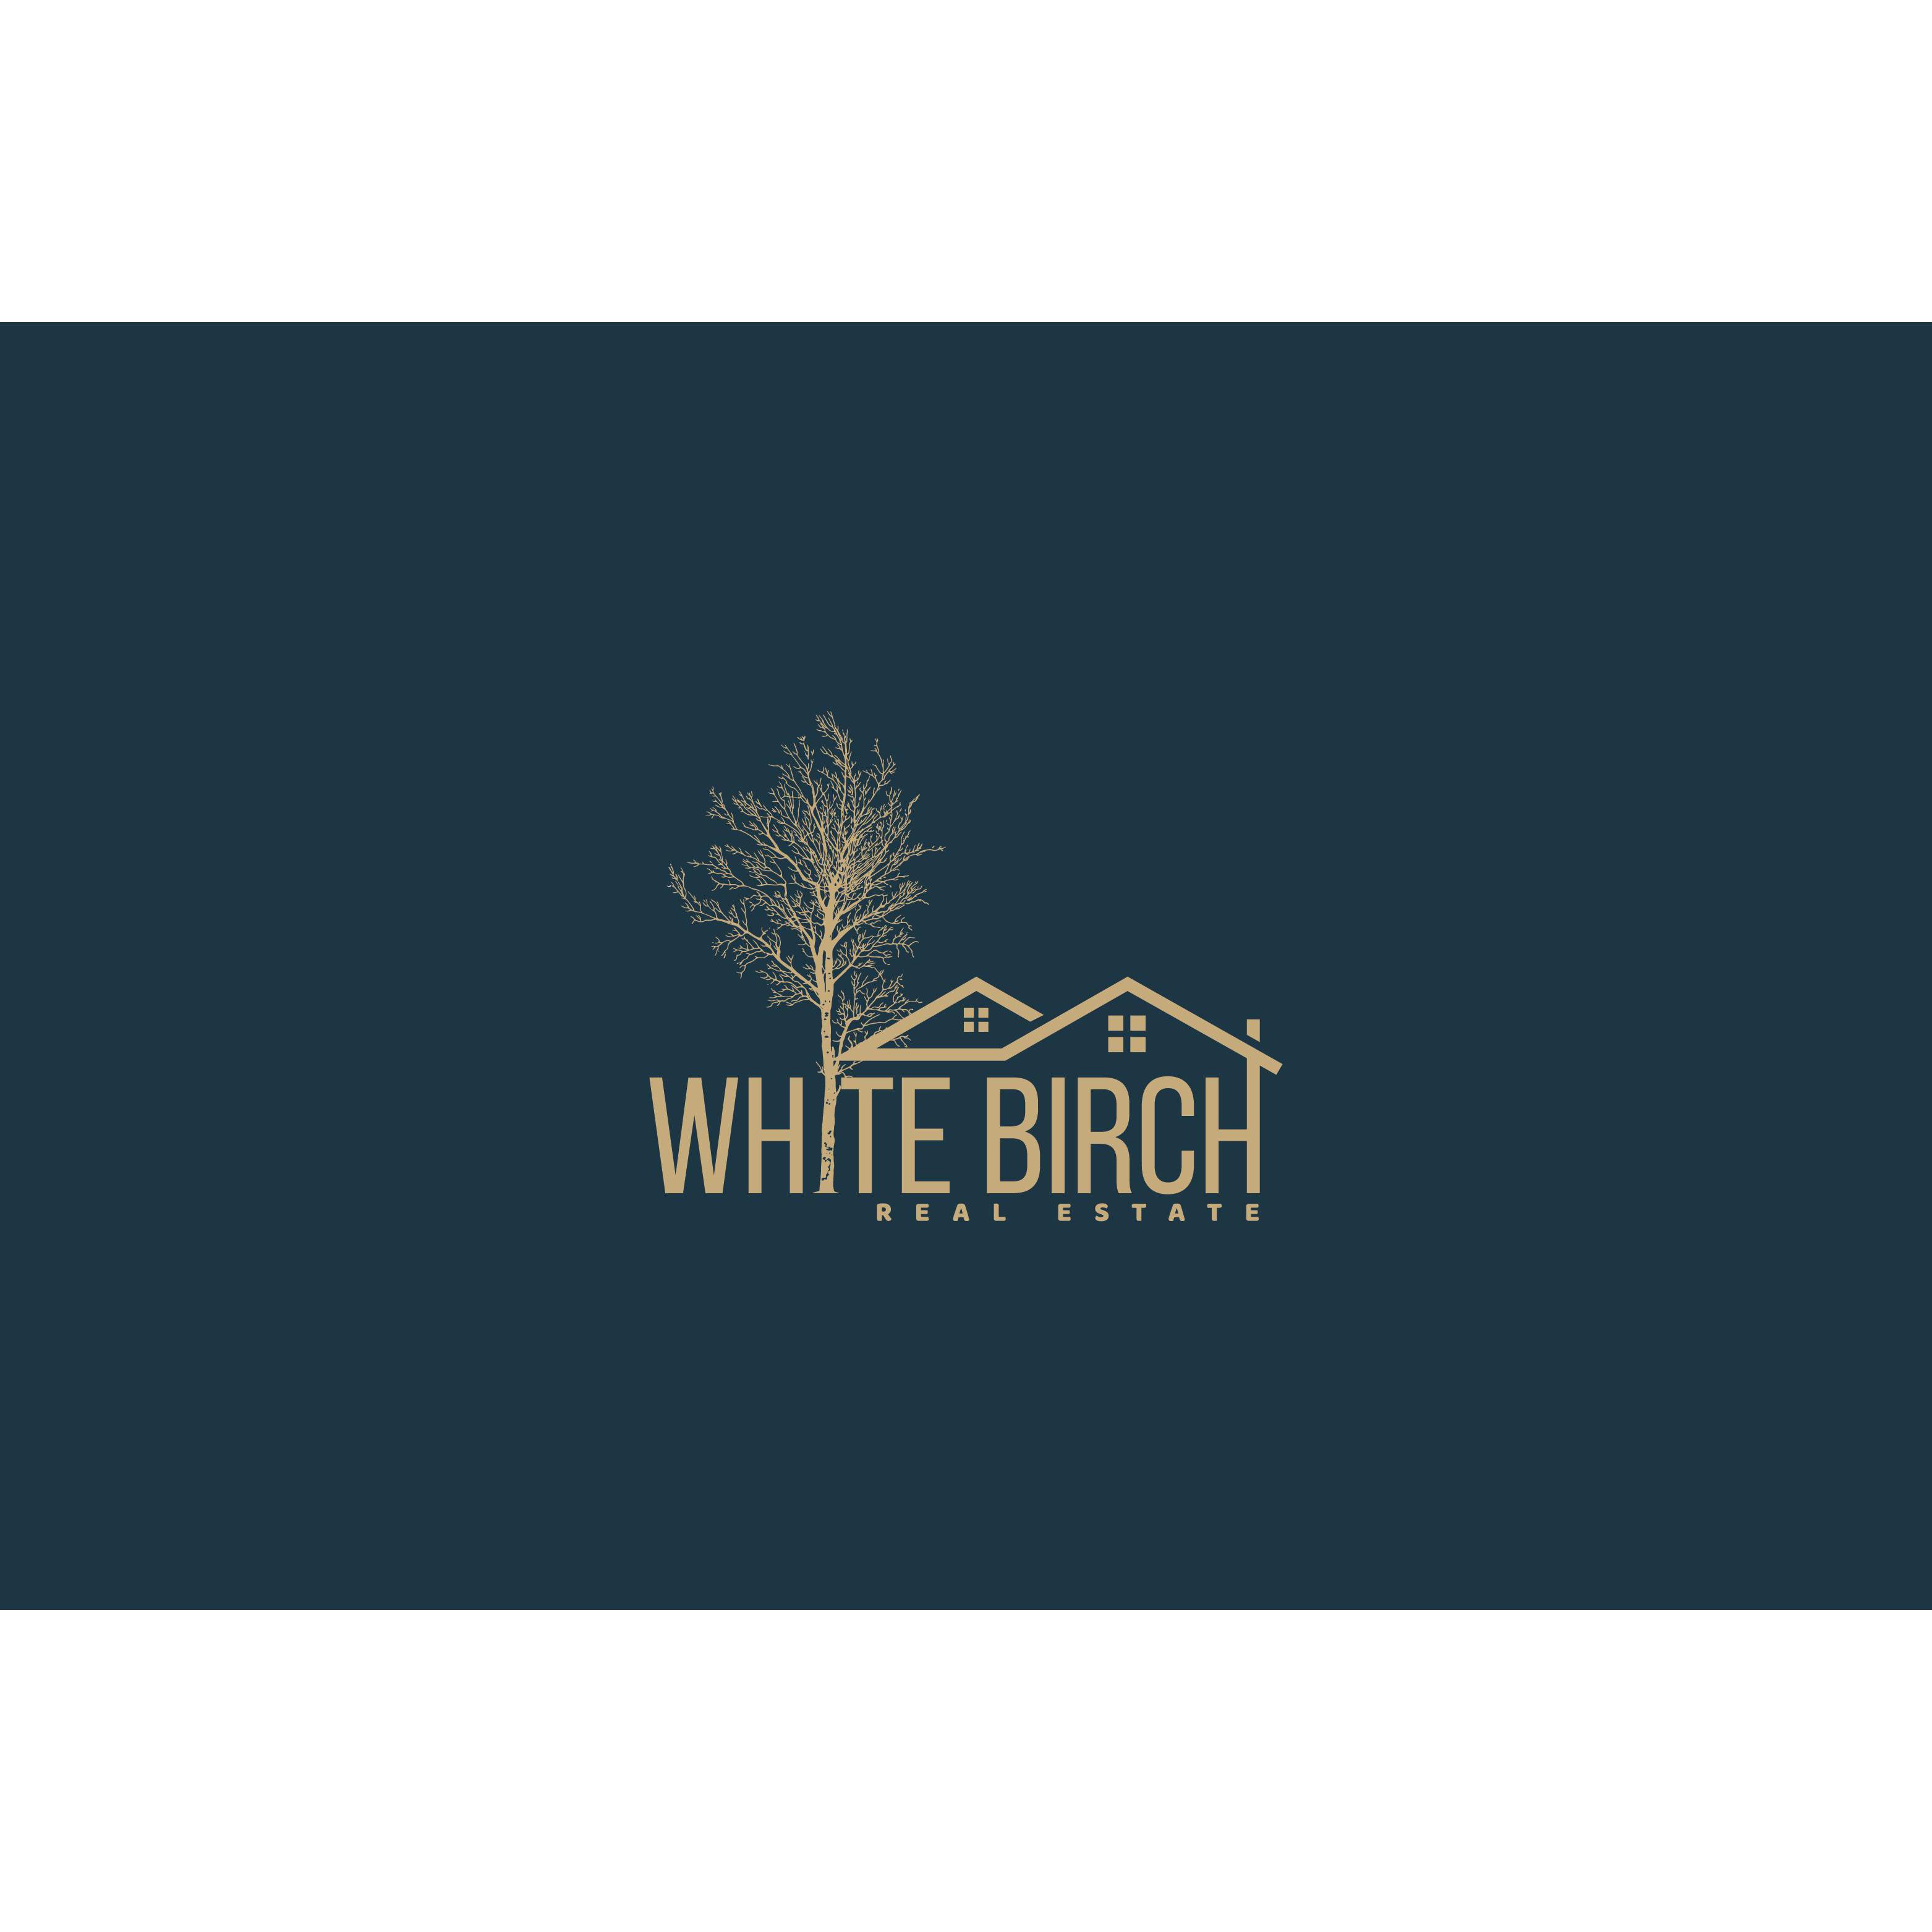 White Birch Real Estate